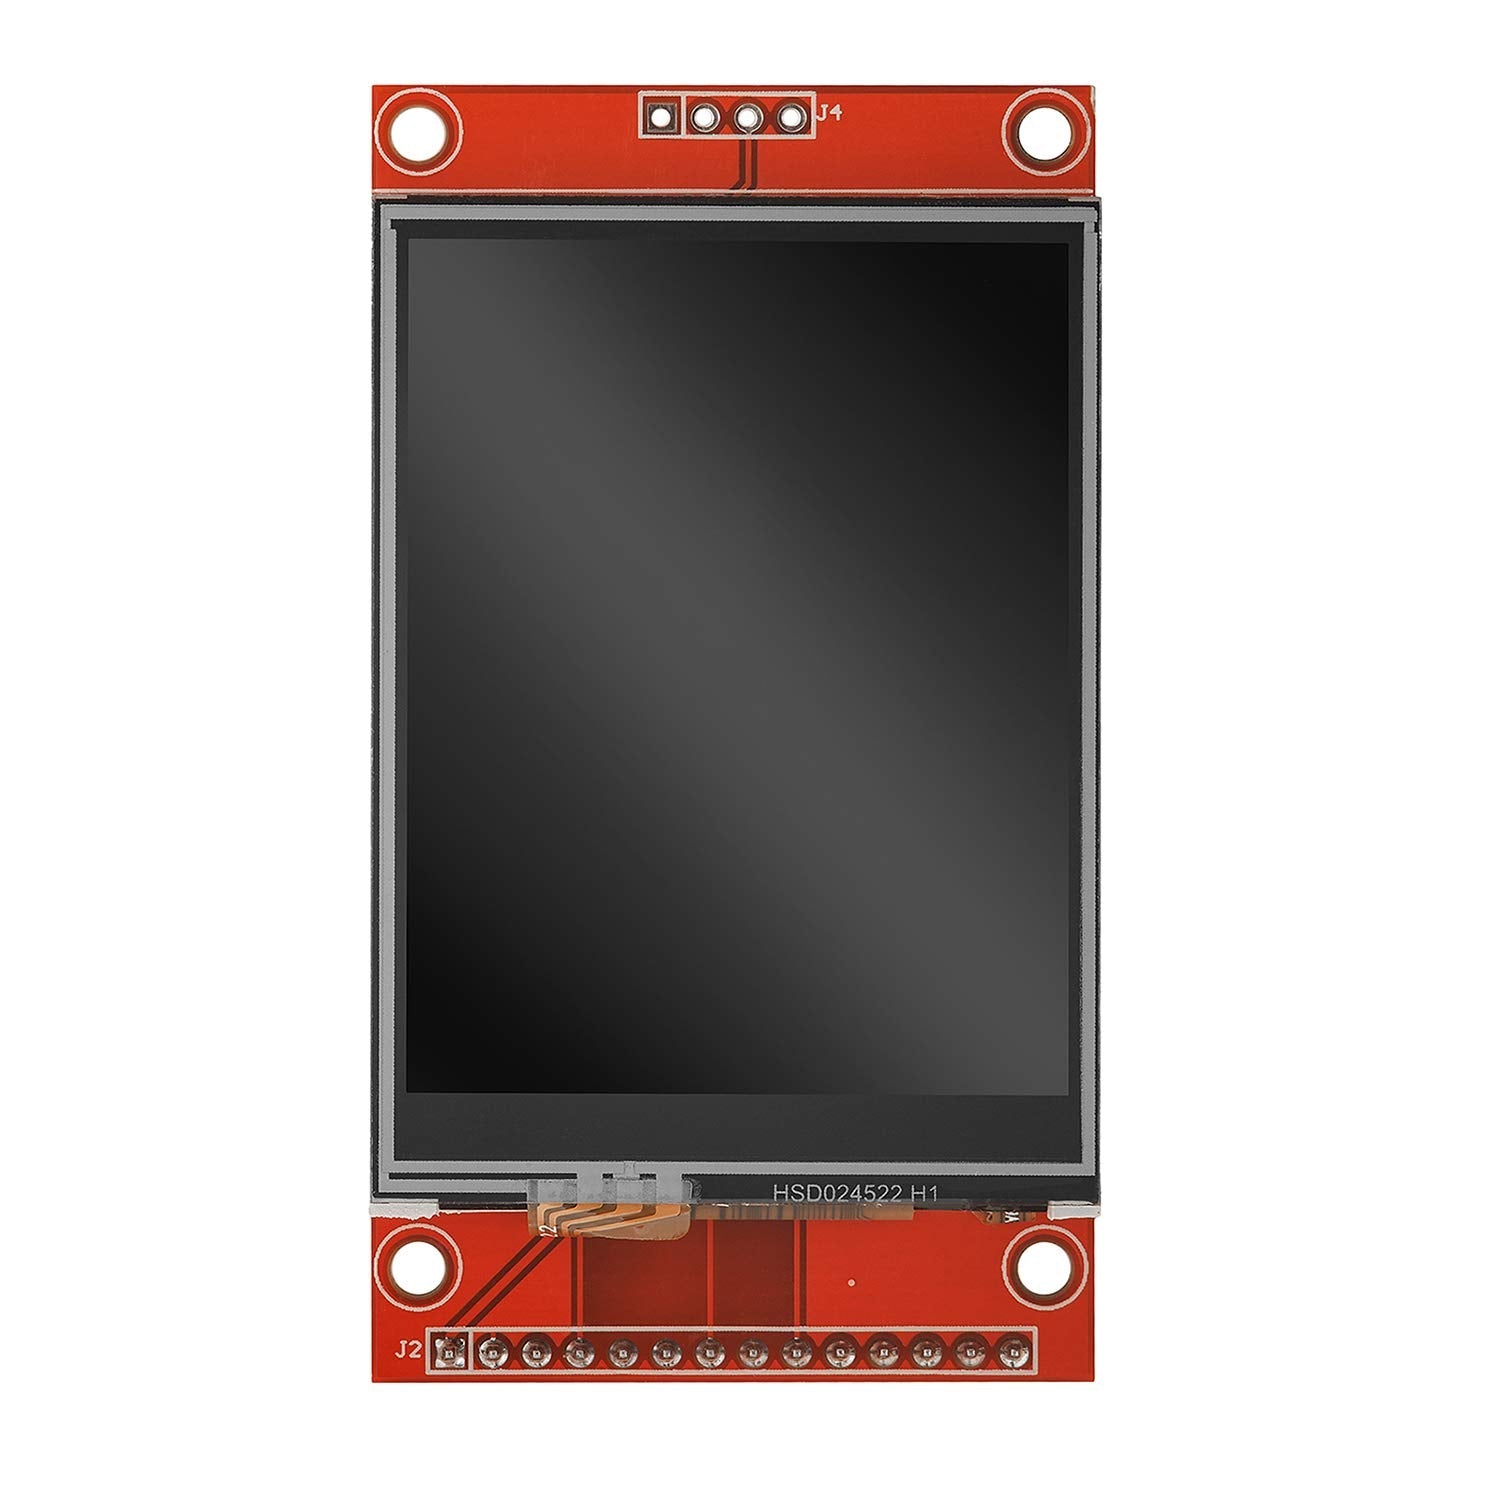 AZ-Touch MOD Wandgehäuseset mit 2,8 Zoll Touchscreen für ESP8266 und ESP32 - AZ-Delivery